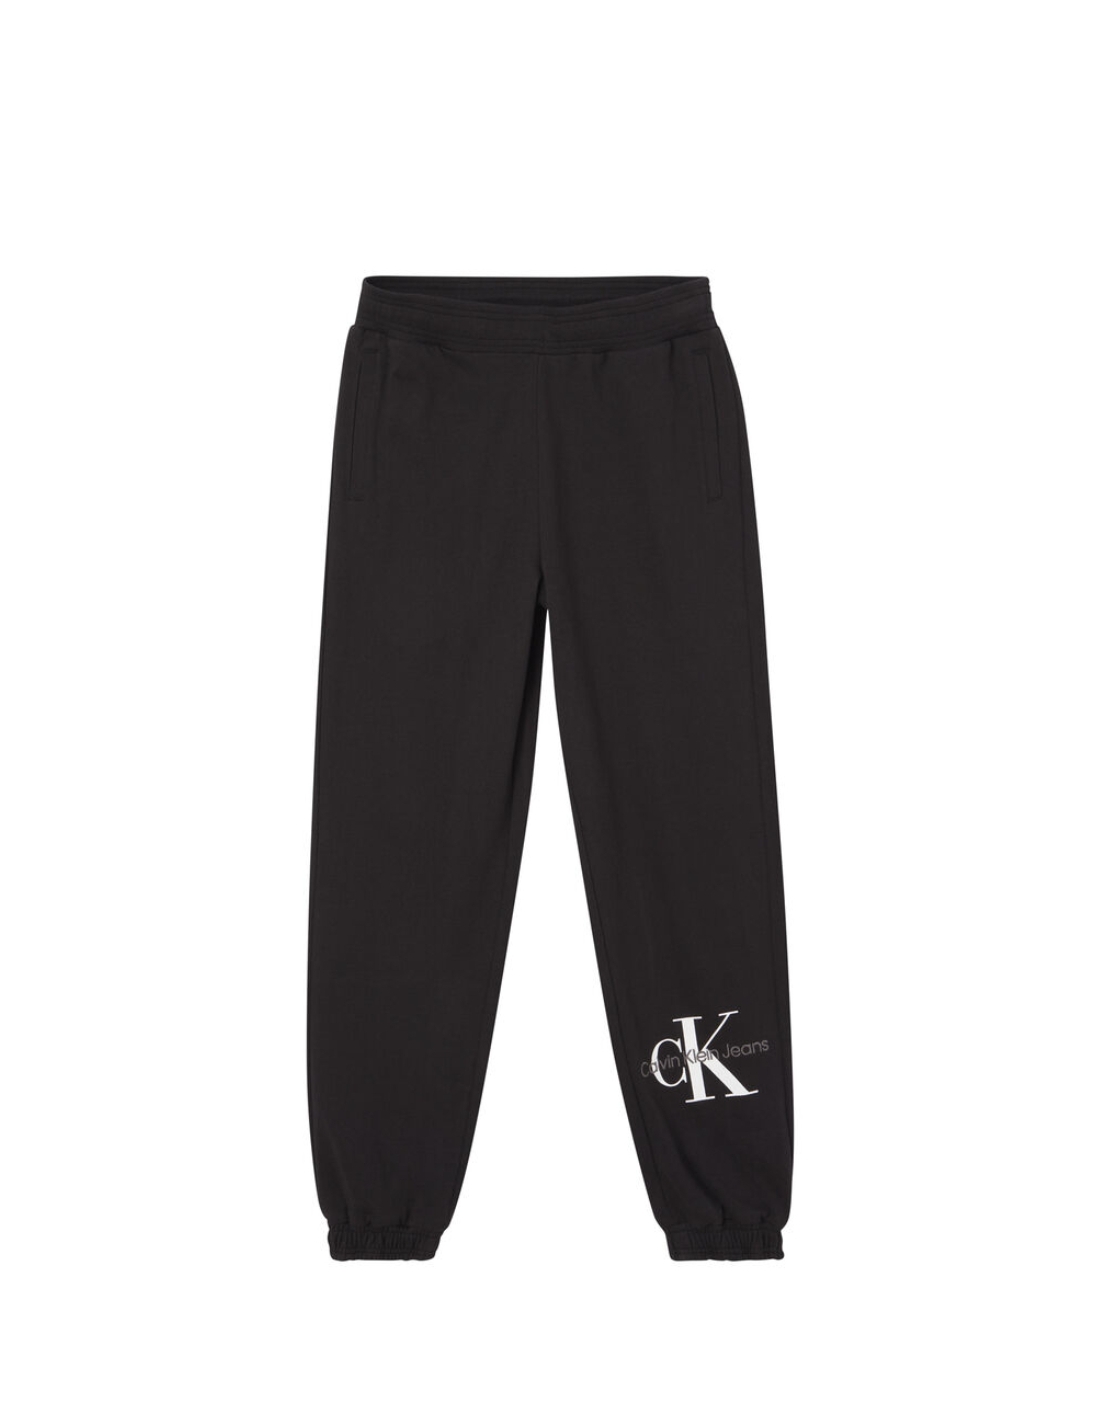 Pantalon de jogging femme Calvin Klein Jeans noir - Pallas Cuir